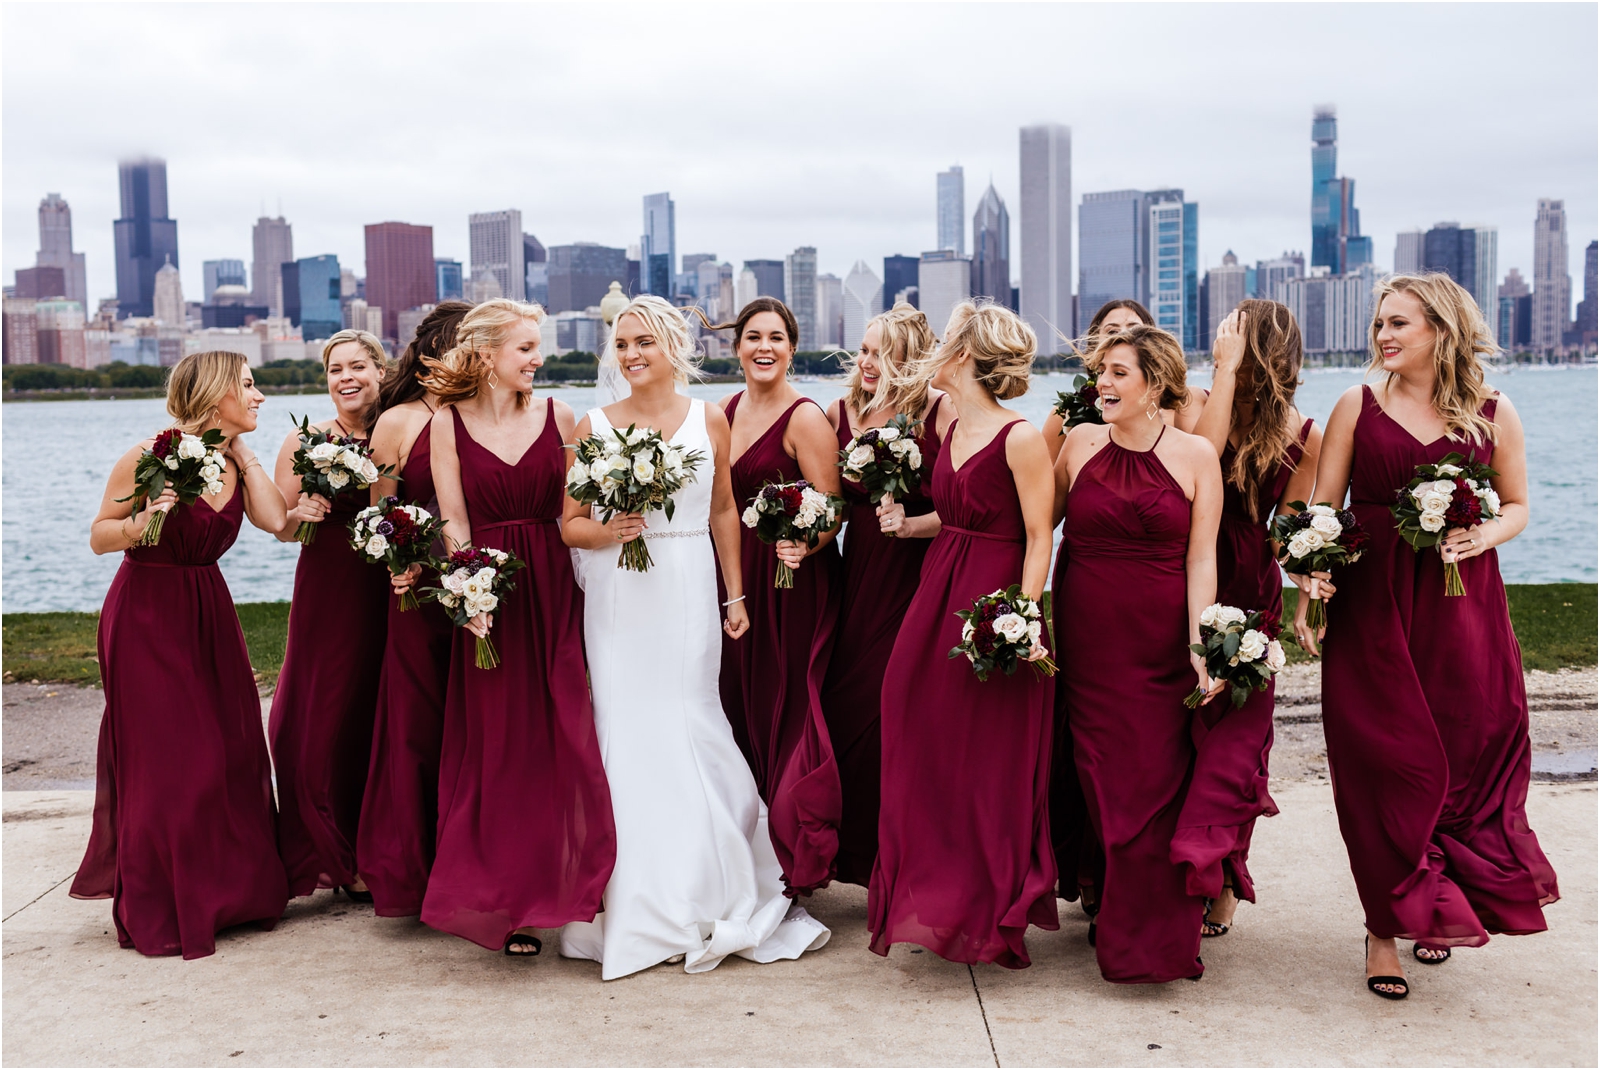 Dalcy-Wedding-Chicago-JillTiongcoPhotography_0023.jpg